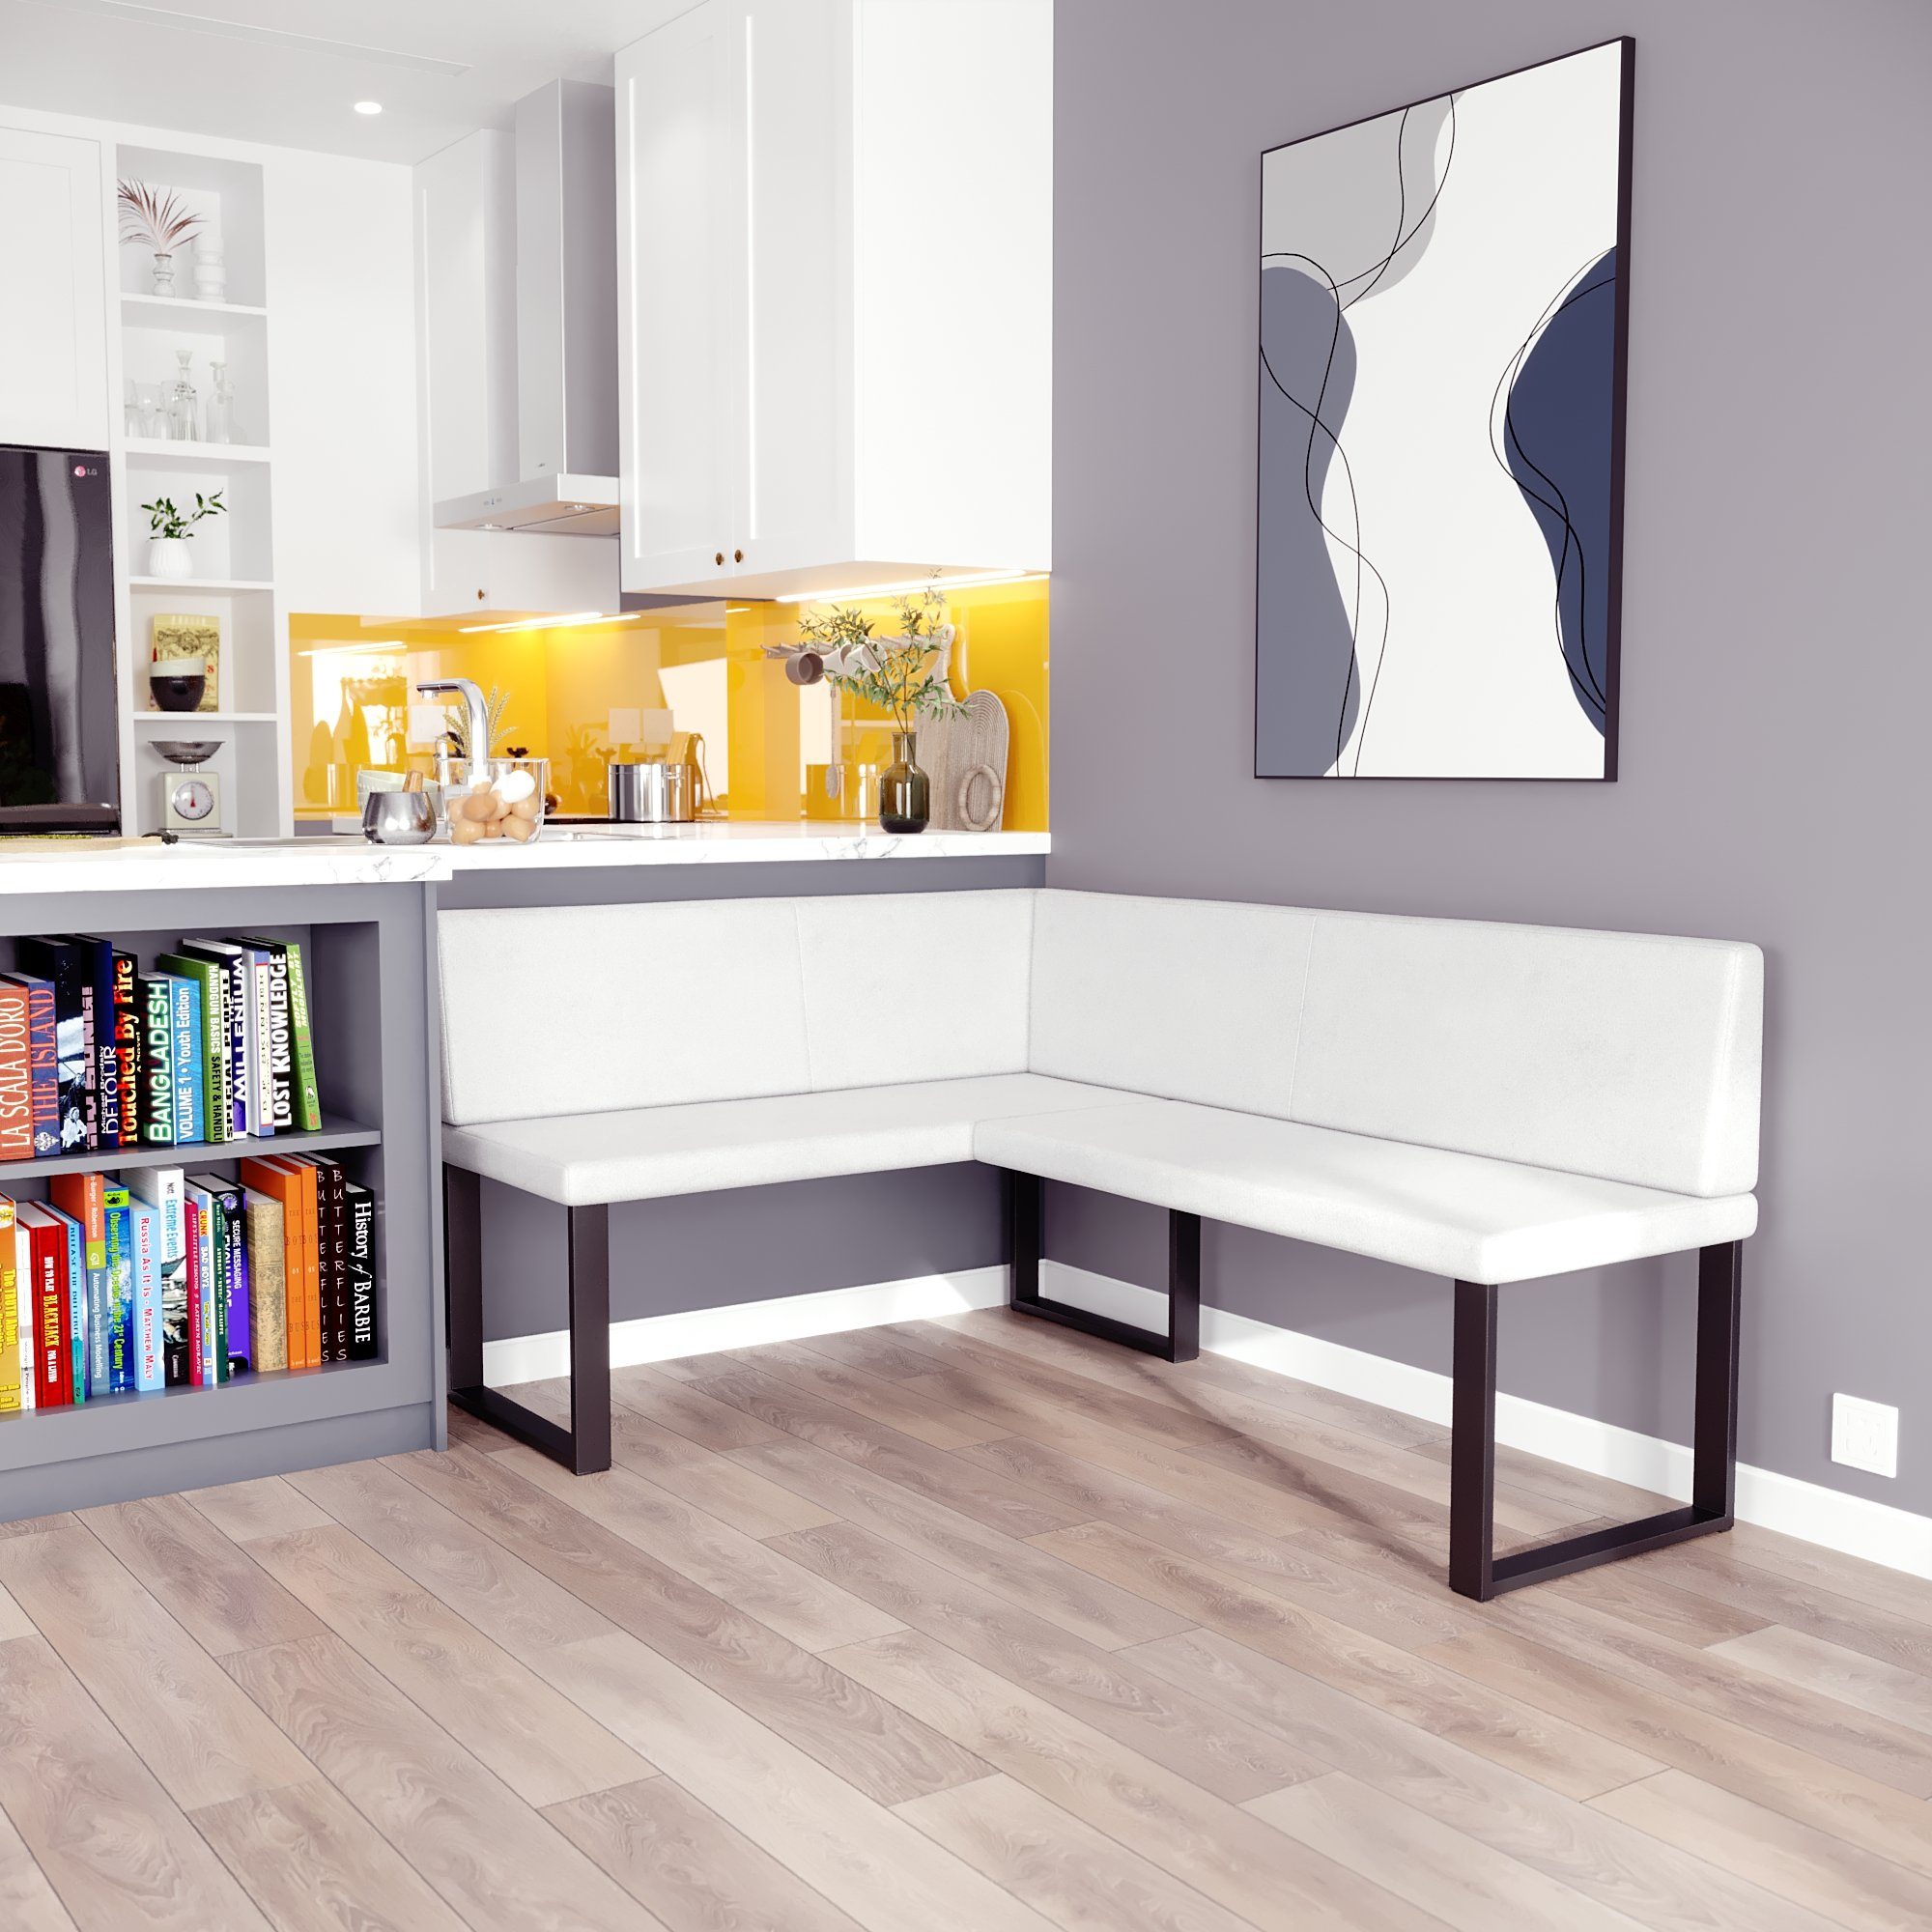 sofa4you Eckbank ALINA Metall, perfekt für Küche, Esszimmer, Wohnzimmer. Zwei Größen 128x168/142x196 weiß